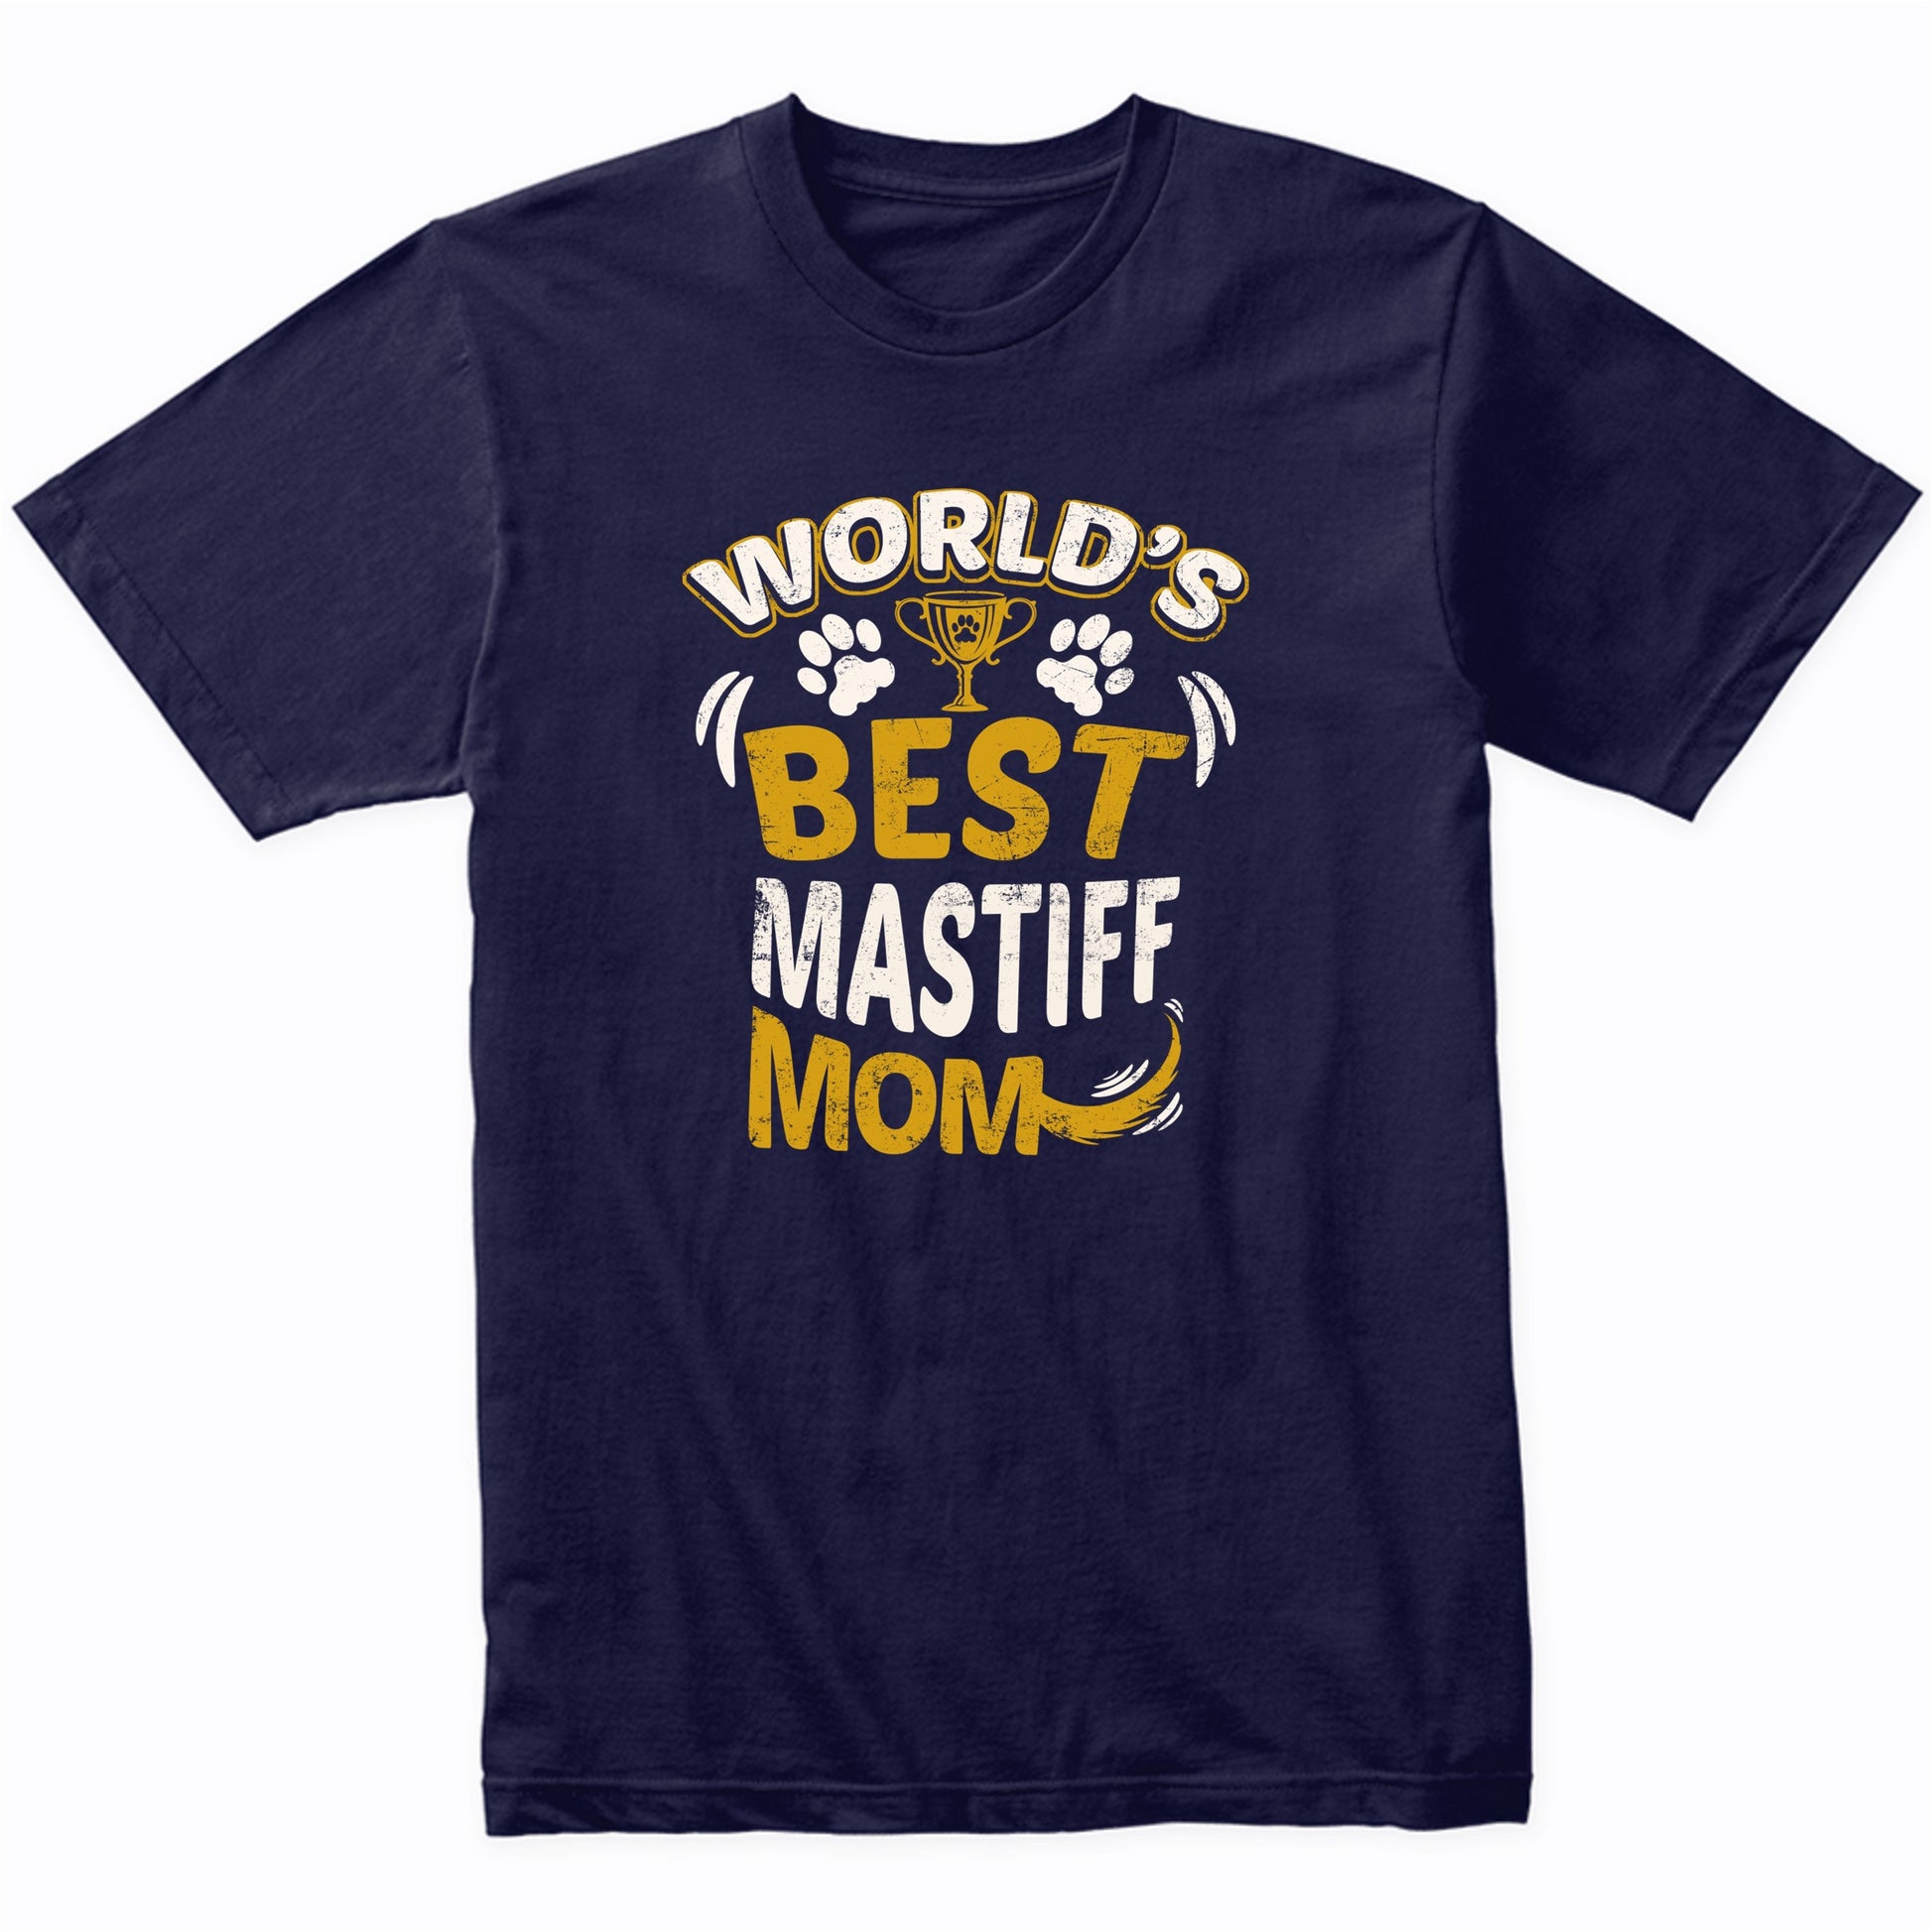 World's Best Mastiff Mom Graphic T-Shirt